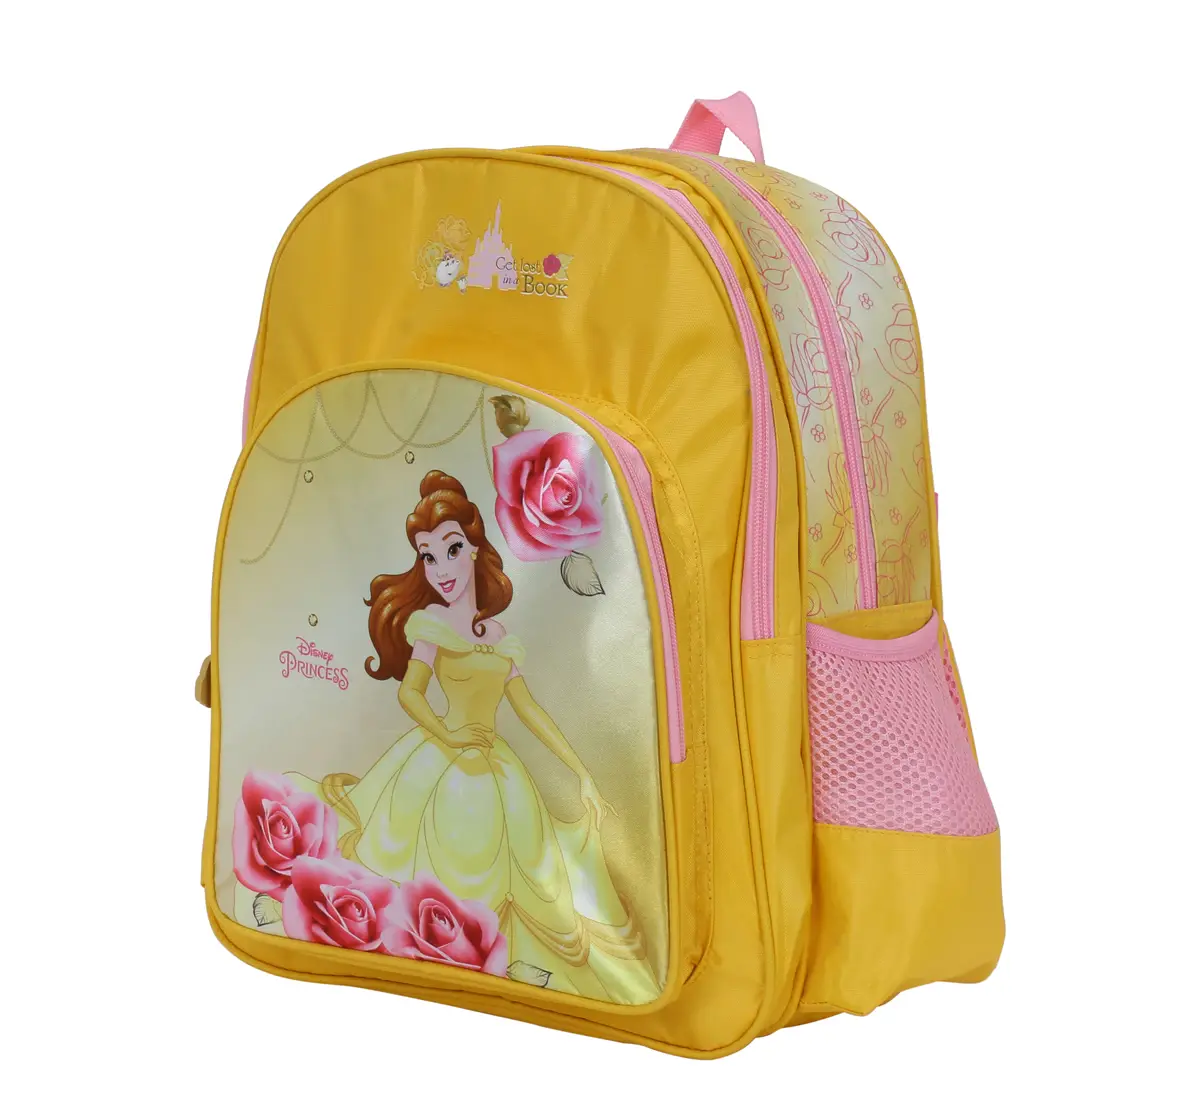 Simba Princess Big Dreams 16 Backpack Multicolor 3Y+